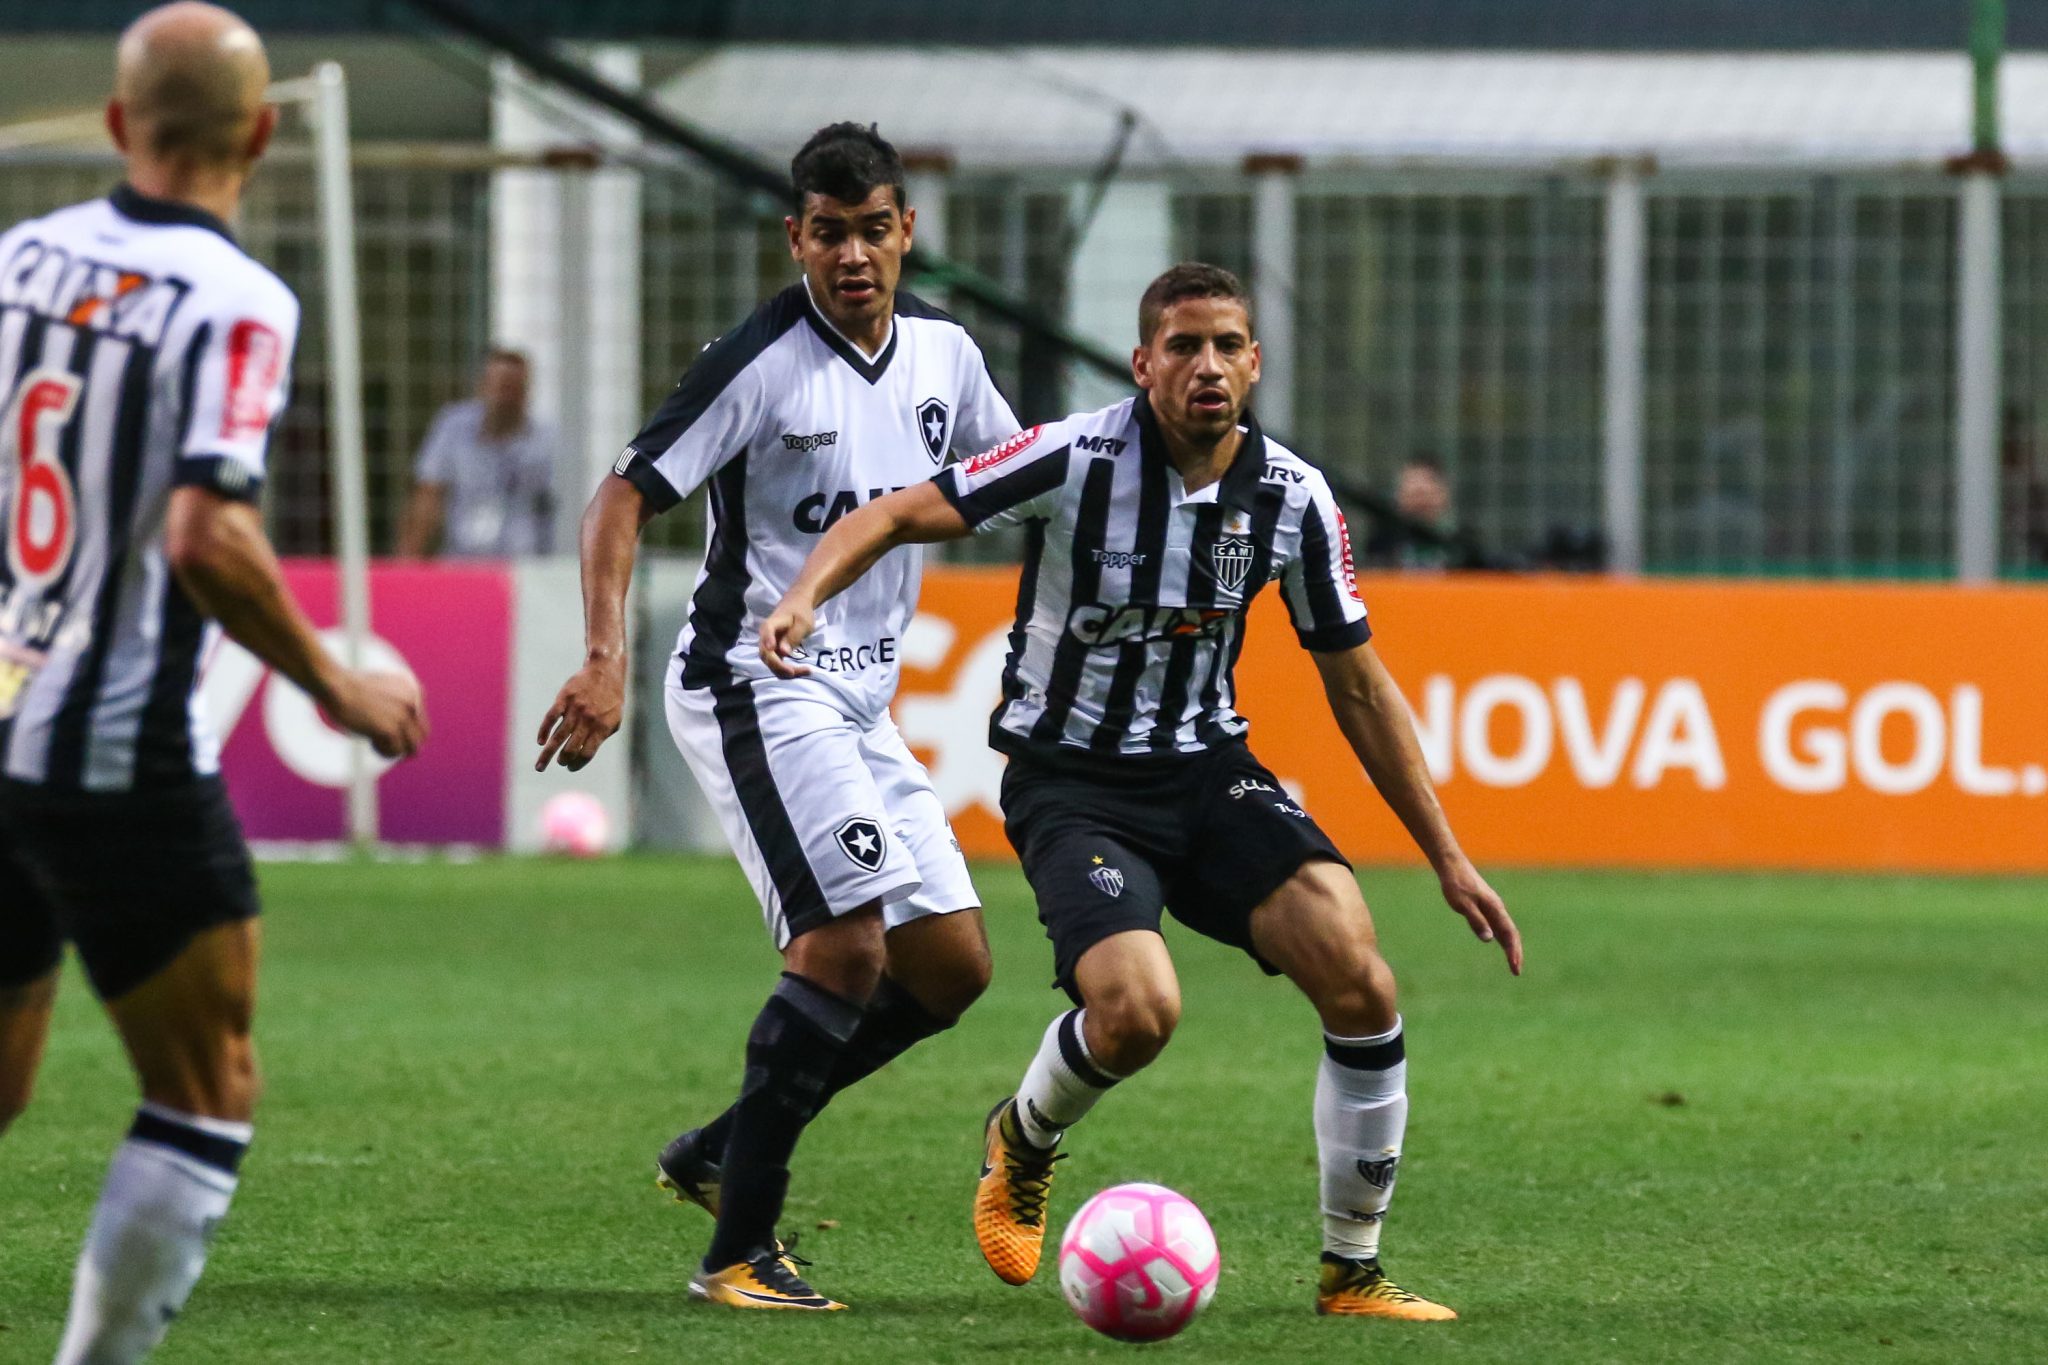 37968958336 8cfa25bd2e o - Atlético 0 x 0 Botafogo - Galo tenta, mas esbarra na falta de inspiração e só empata no Horto